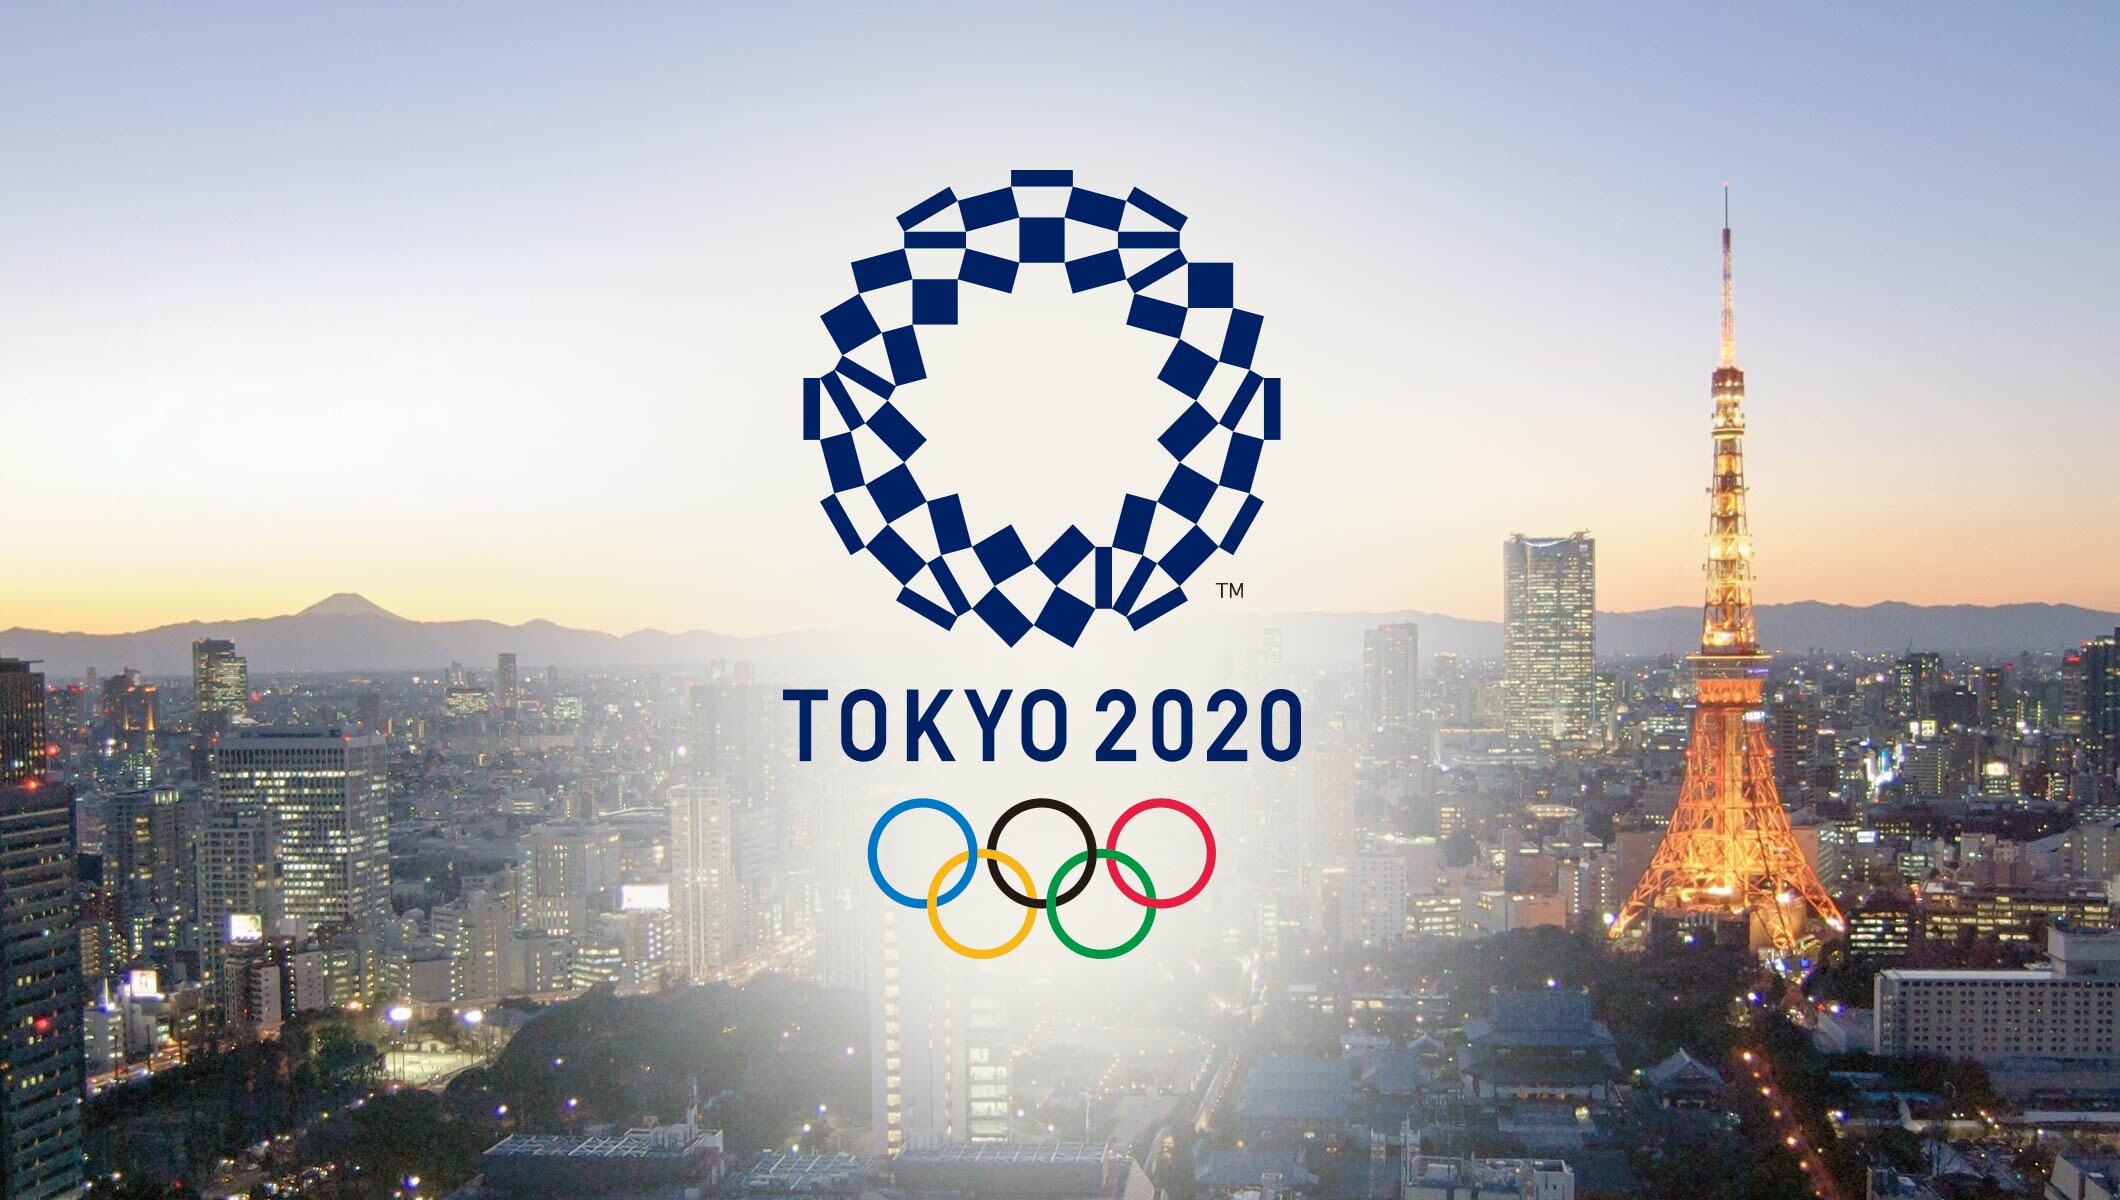 البرنامج الخاص لأولمبياد  2020